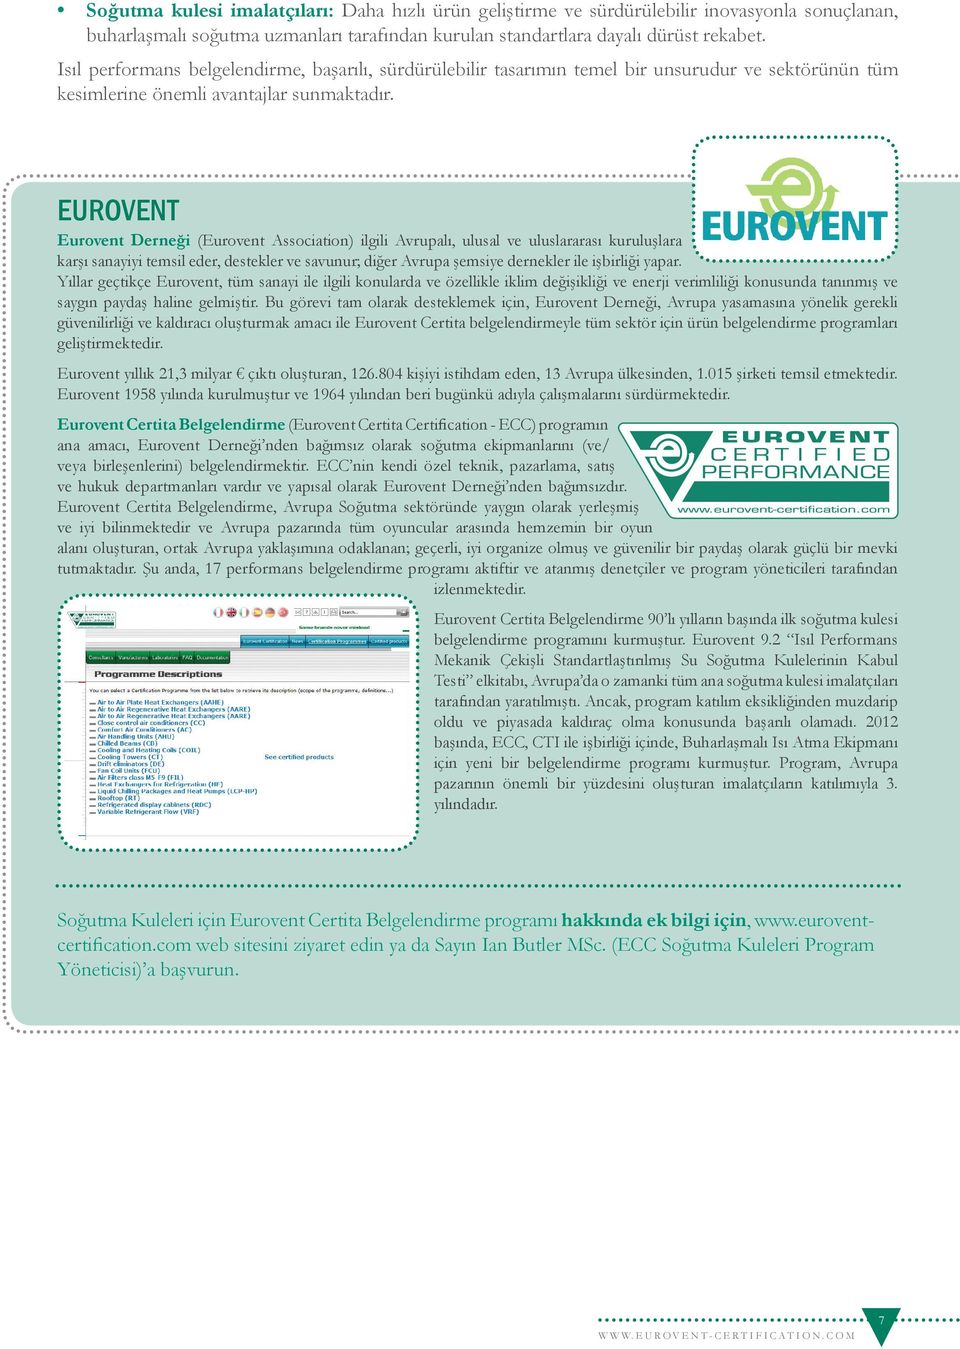 EUROVENT Eurovent Derneği (Eurovent Association) ilgili Avrupalı, ulusal ve uluslararası kuruluşlara karşı sanayiyi temsil eder, destekler ve savunur; diğer Avrupa şemsiye dernekler ile işbirliği